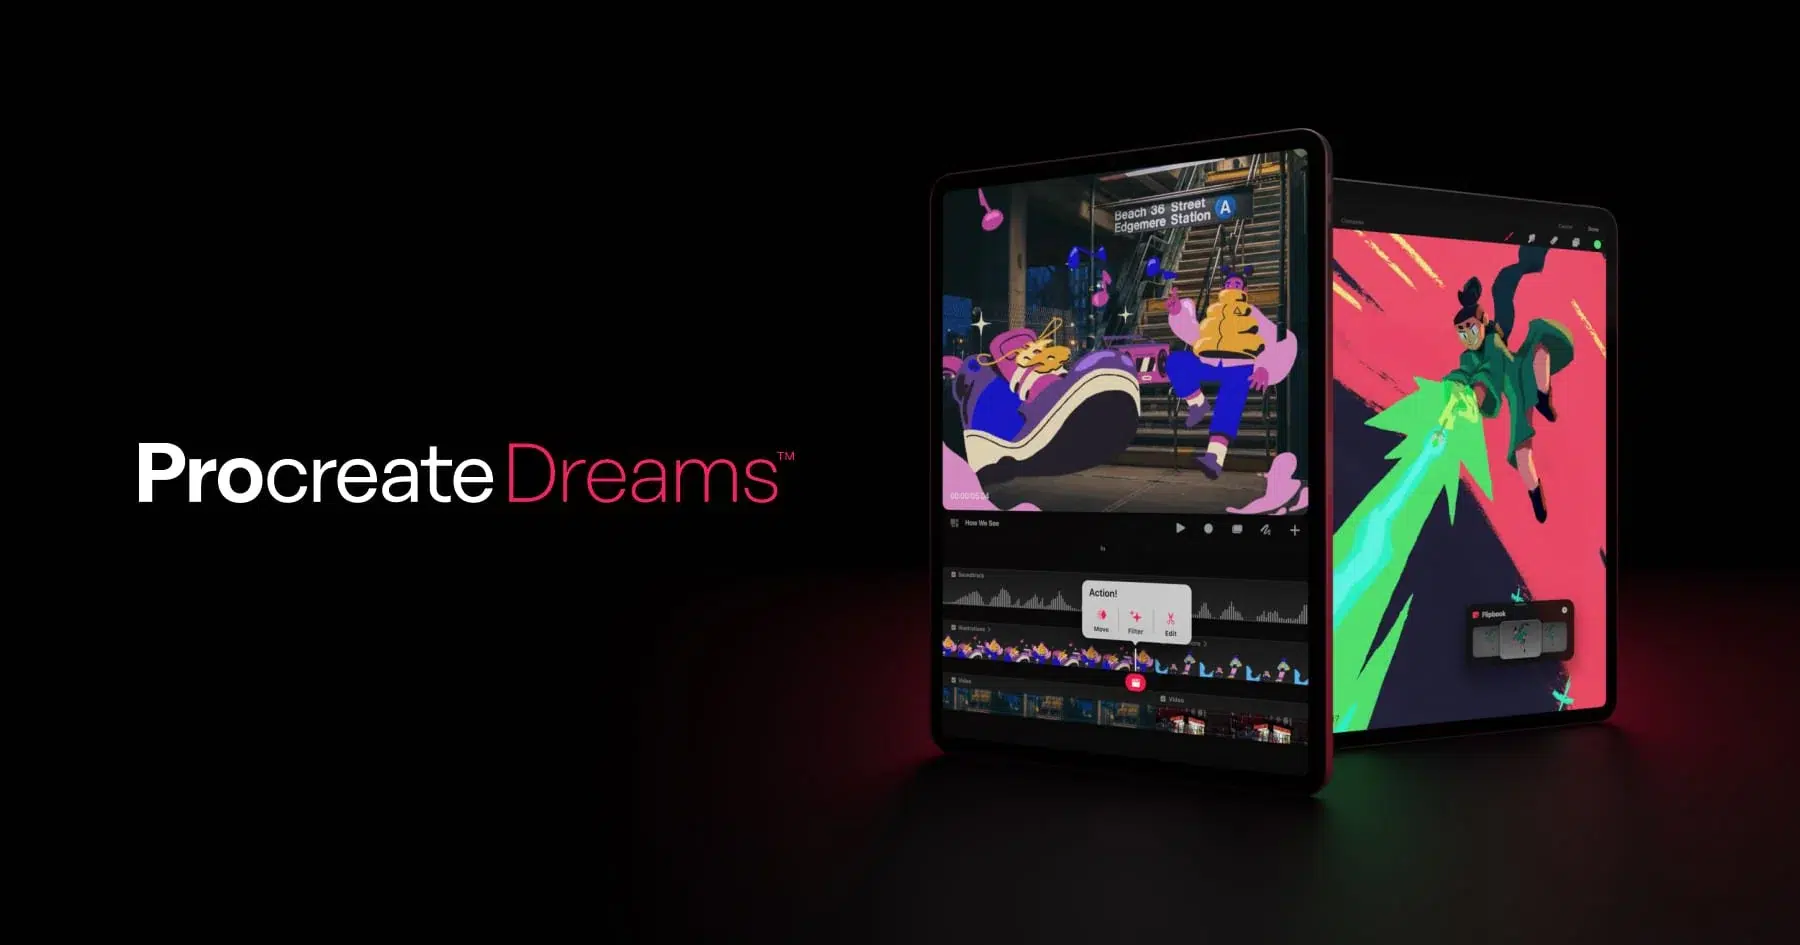 Η Procreate, πρωτοπόρος στη δημιουργία εικονογραφήσεων για το iPad, παρουσίασε το νέο της λογισμικό με το όνομα "Dreams". Σχεδιασμένο για να διευκολύνει τη δημιουργία πλούσιων 2D animations, εκφραστικών βίντεο και συναρπαστικών ιστοριών, το Dreams υπόσχεται δυνατότητες που μπορούν να αξιοποιηθούν από κάθε χρήστη.